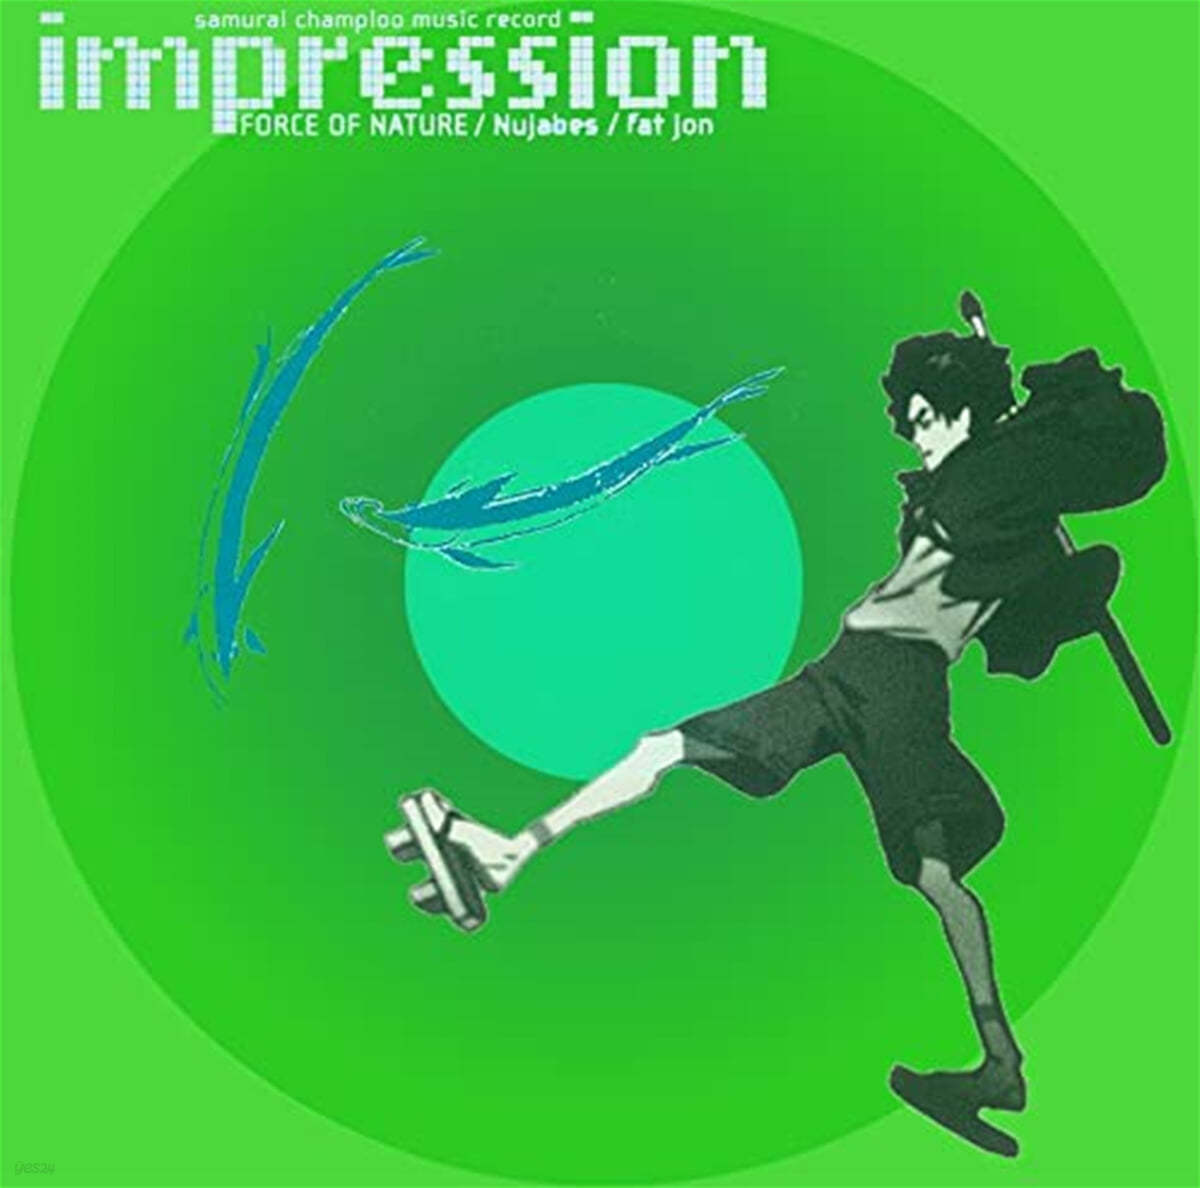 사무라이 참프루 애니메이션 음악 - 임프레션 (Samurai Champloo Music Record: impression Original Soundtrack by Nujabes, fat jon)